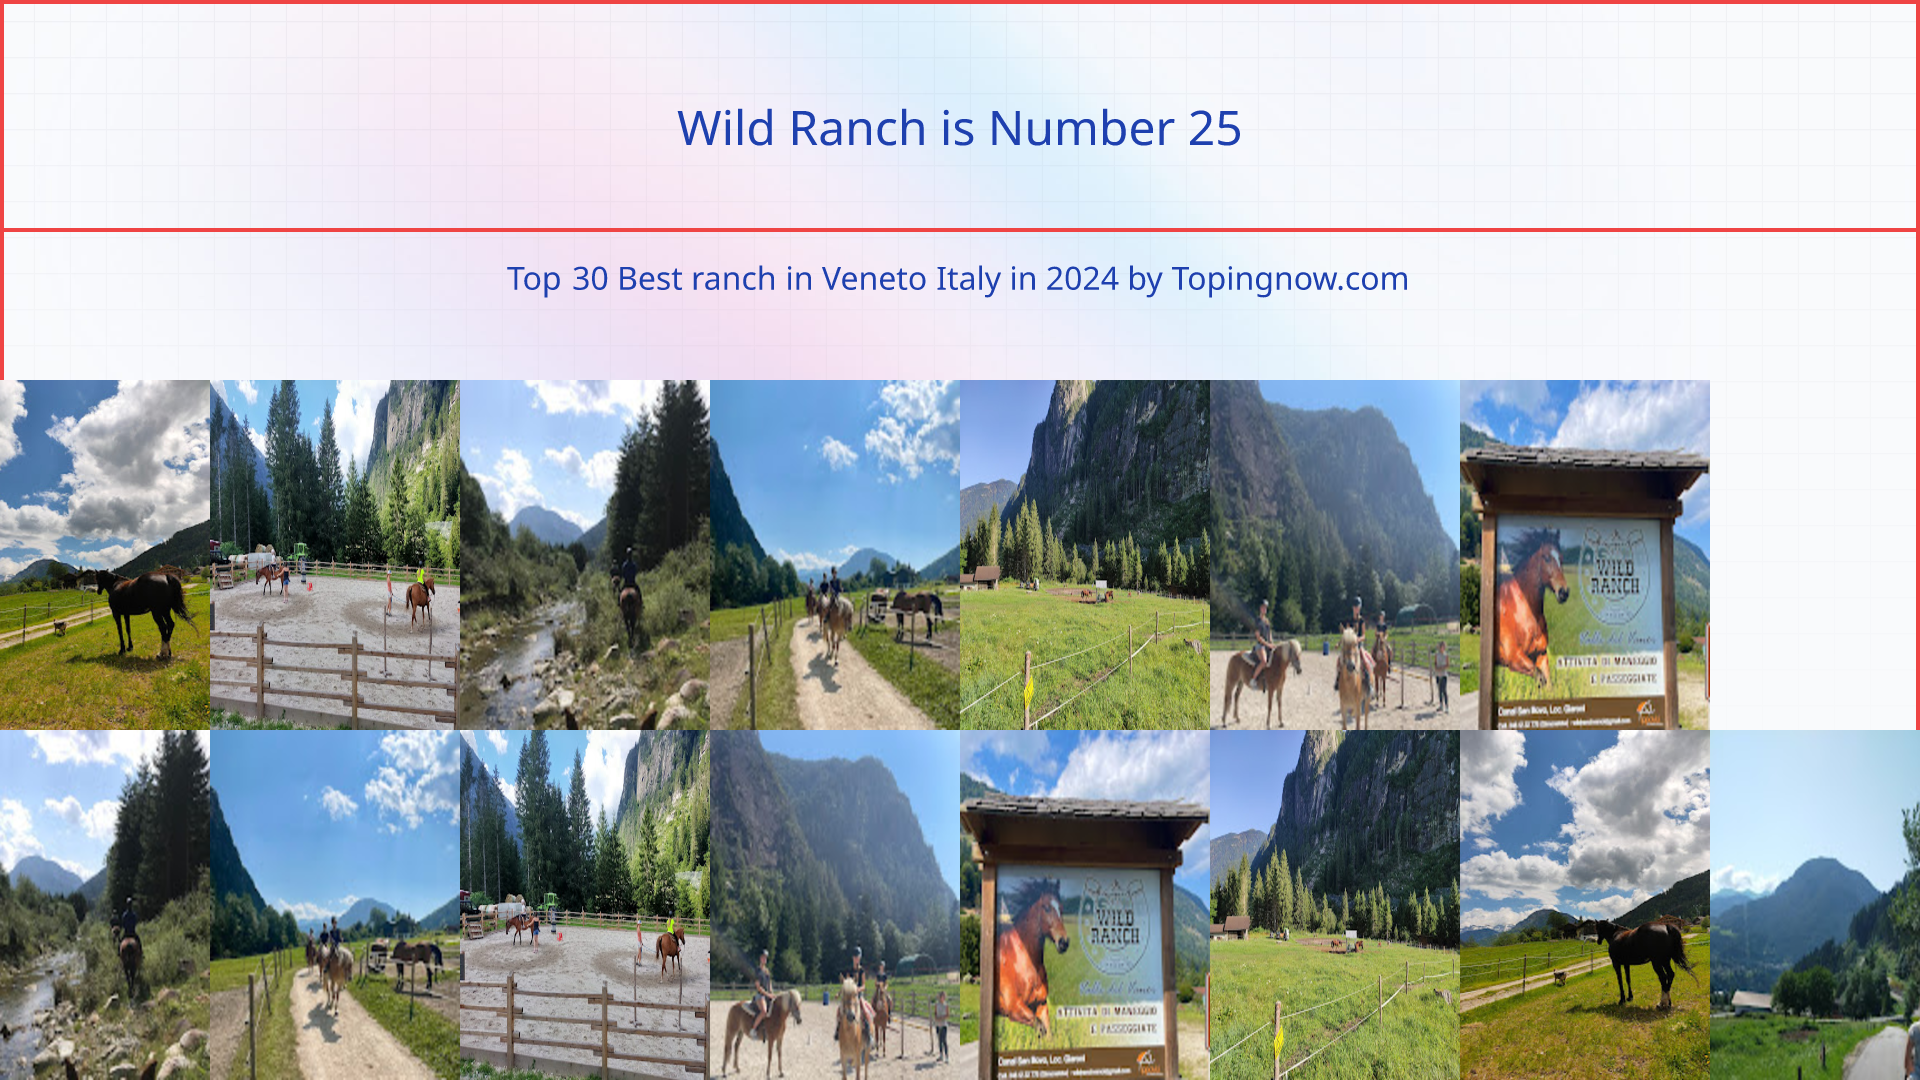 Wild Ranch: Top 30 Best ranch in Veneto Italy in 2024